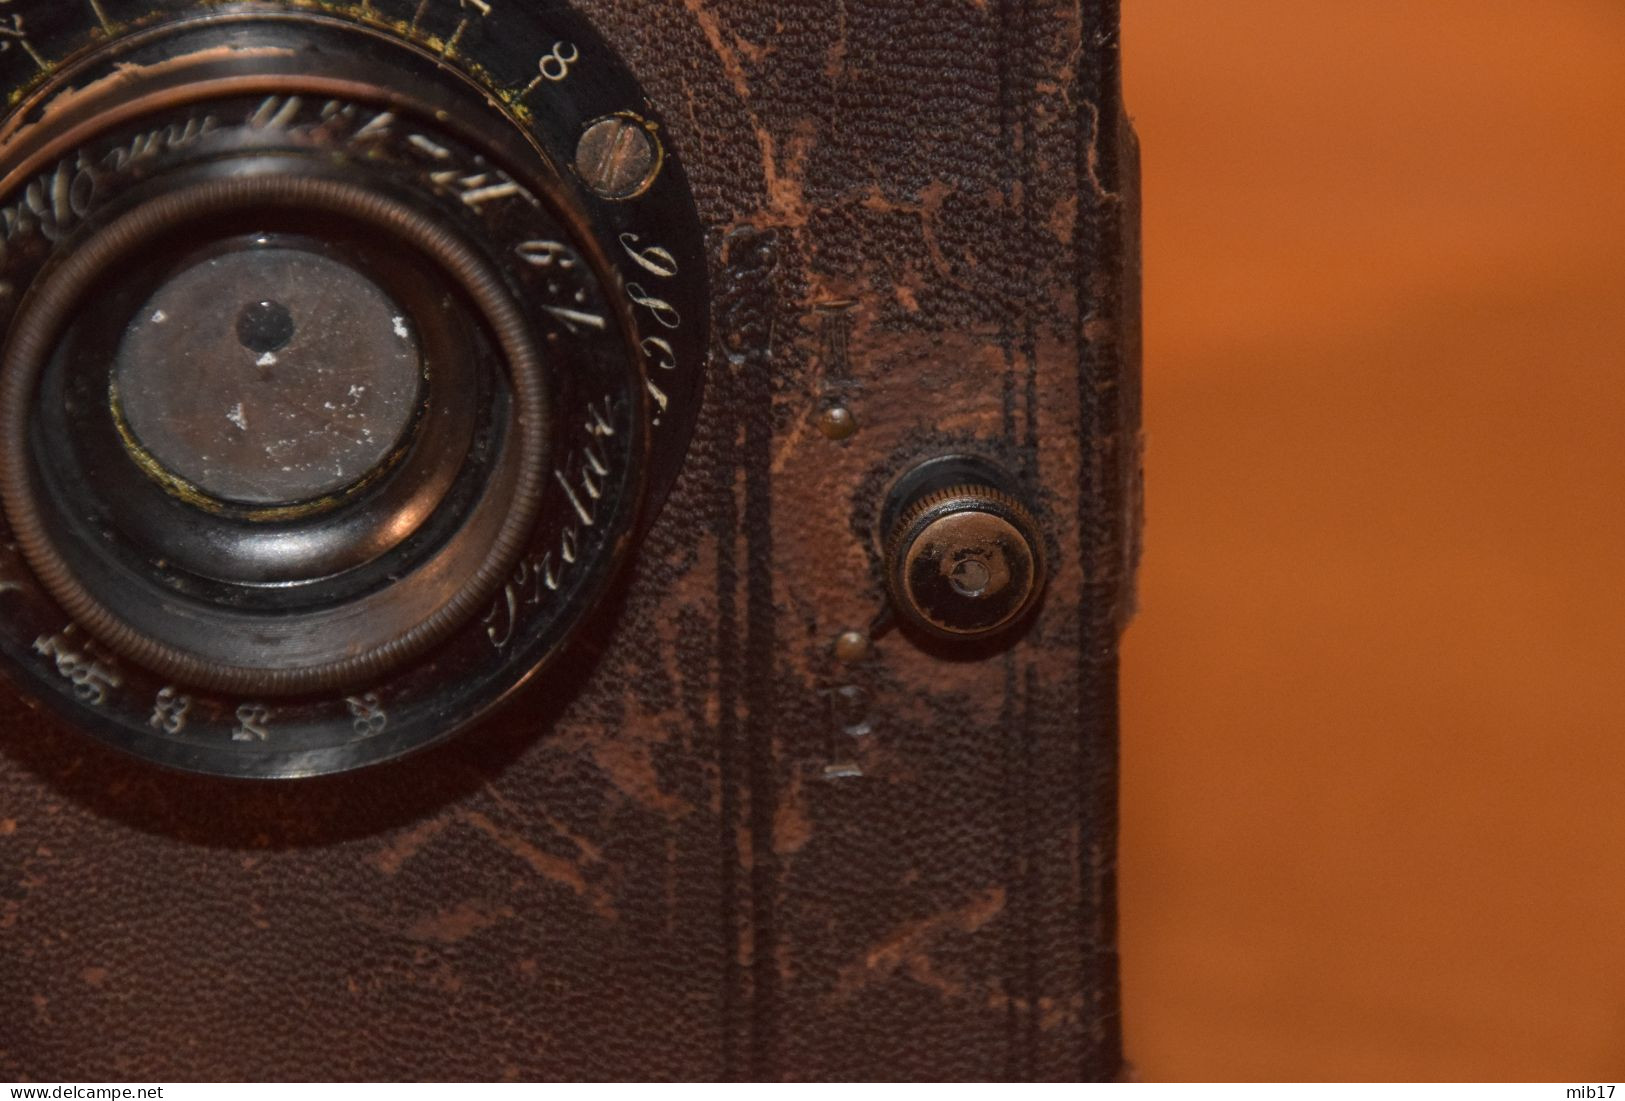 appareil photo à plaques MURER-DURONI détective Express Newness vers 1910 obj PROTAR/ZEISS - F KORISTKA -ENRIQUE LEPAGE